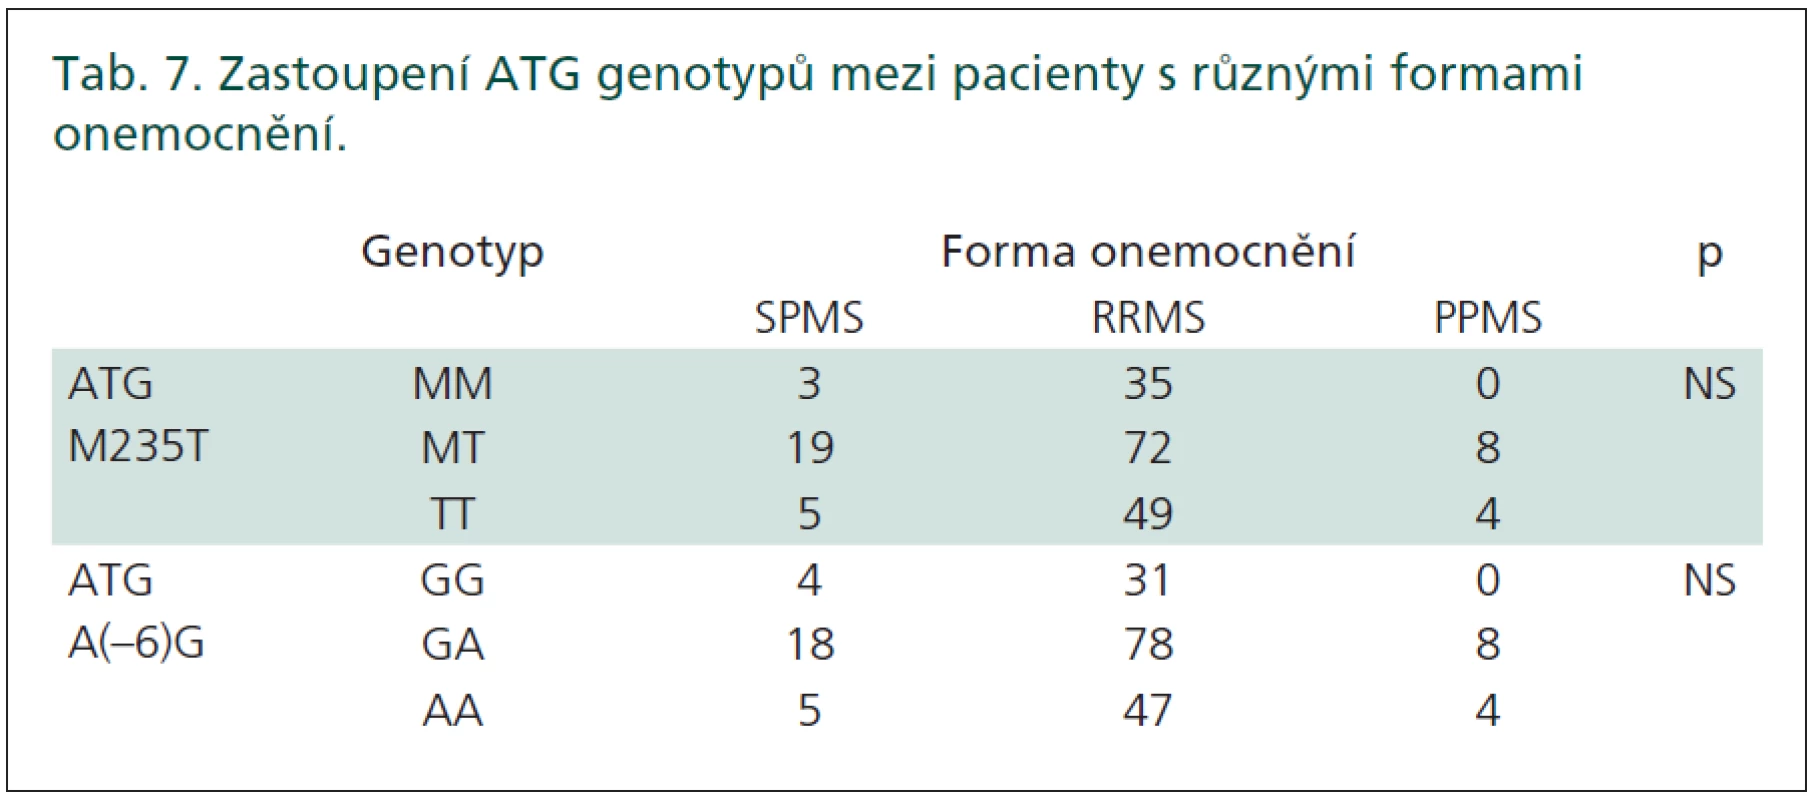 Zastoupení ATG genotypů mezi pacienty s různými formami onemocnění.